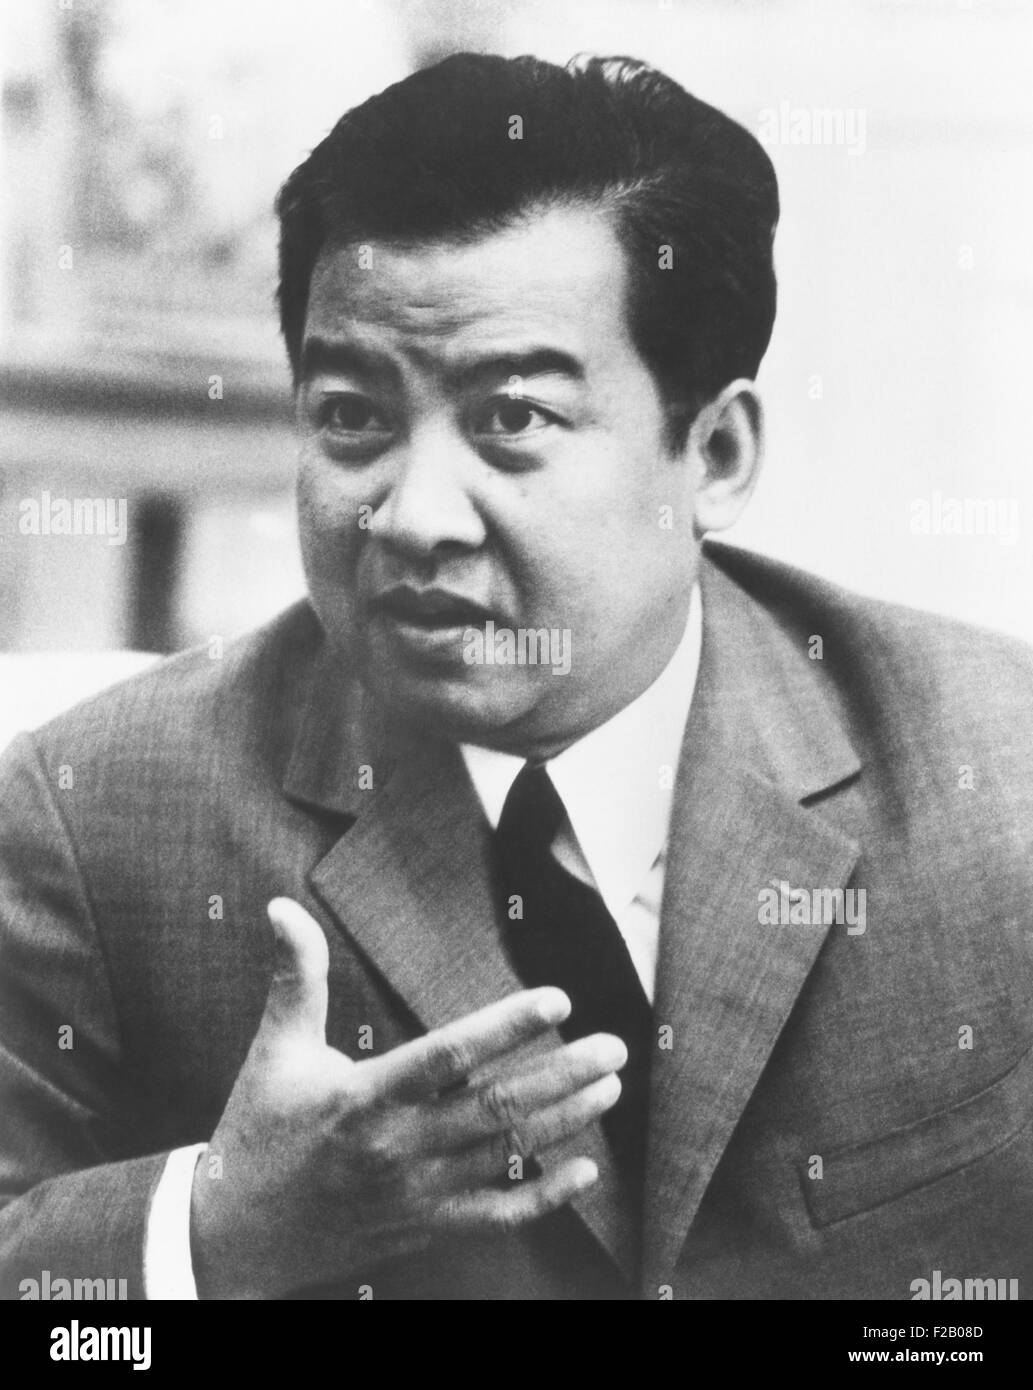 Prinz Norodom Sihanouk 1972 leitete eine kambodschanische Regierung im Exil. Sein Regime wurde von China, Nord-Vietnam und Nordkorea anerkannt. Während er im Exil, Sihanouk mit verbündet und dazu beigetragen, die Legitimität des Khmer Rouges, Kambodscha im April 1975 übernahm. Kambodscha-Genozid durch die Roten Khmer unter der Leitung von Pol Pot zwischen tötete schätzungsweise 25 Prozent der Bevölkerung, rund 2 Millionen Menschen zwischen 1975 und 1979. (CSU 2015 9 1156) Stockfoto